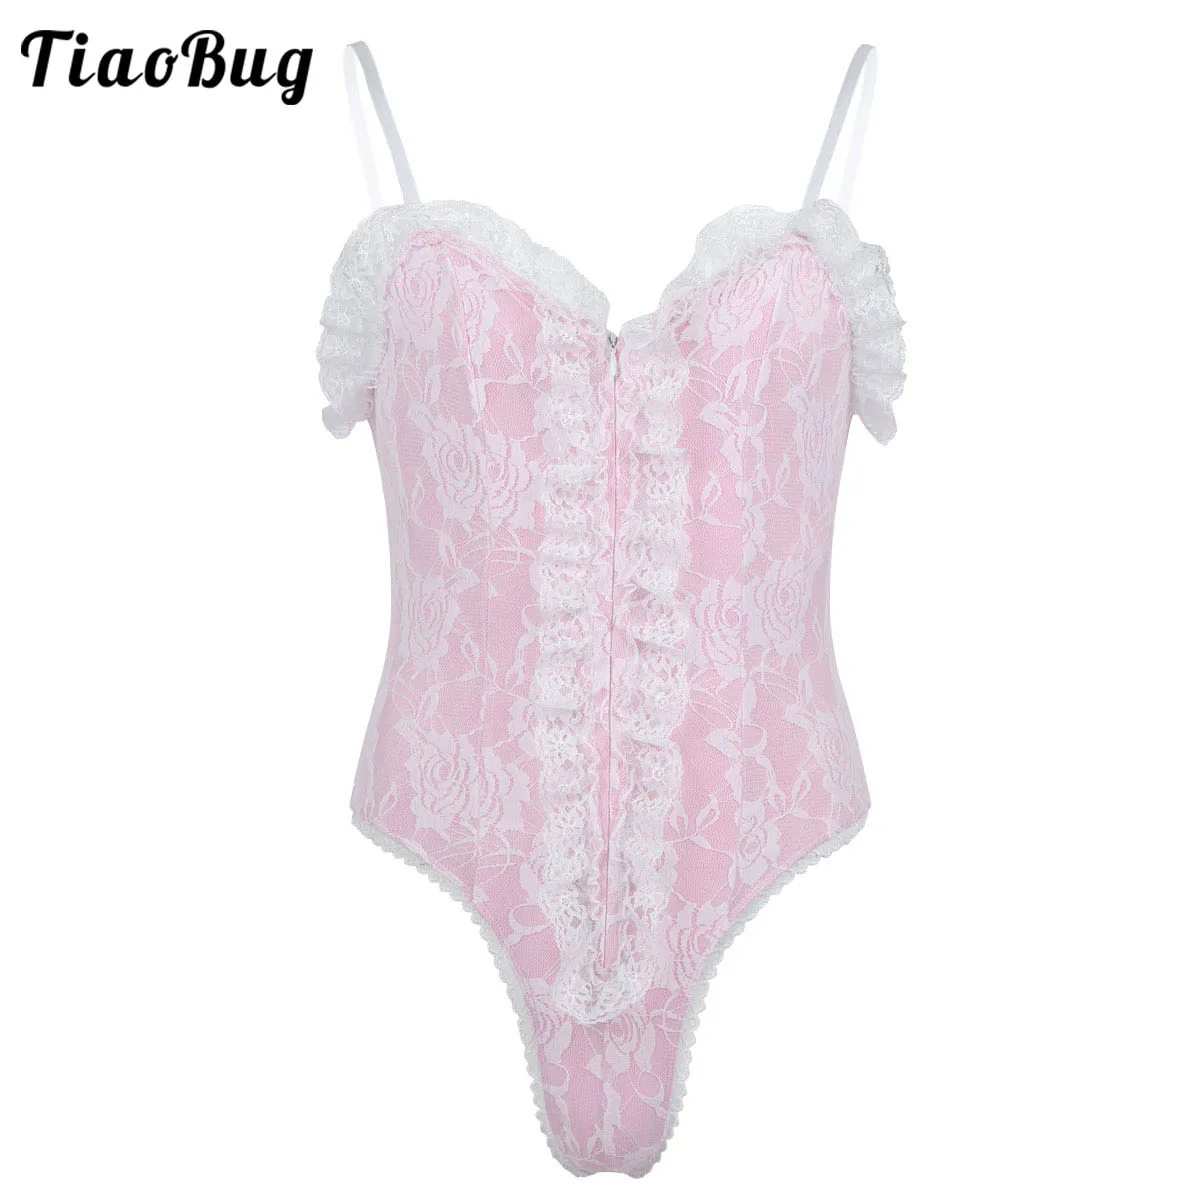 

TiaoBug Sexy Mens Sissy Lingerie Adjustable Spaghetti Shoulder Straps High Cut Ruffle Lace Teddy Bodysuit Nightwear Sleepwear